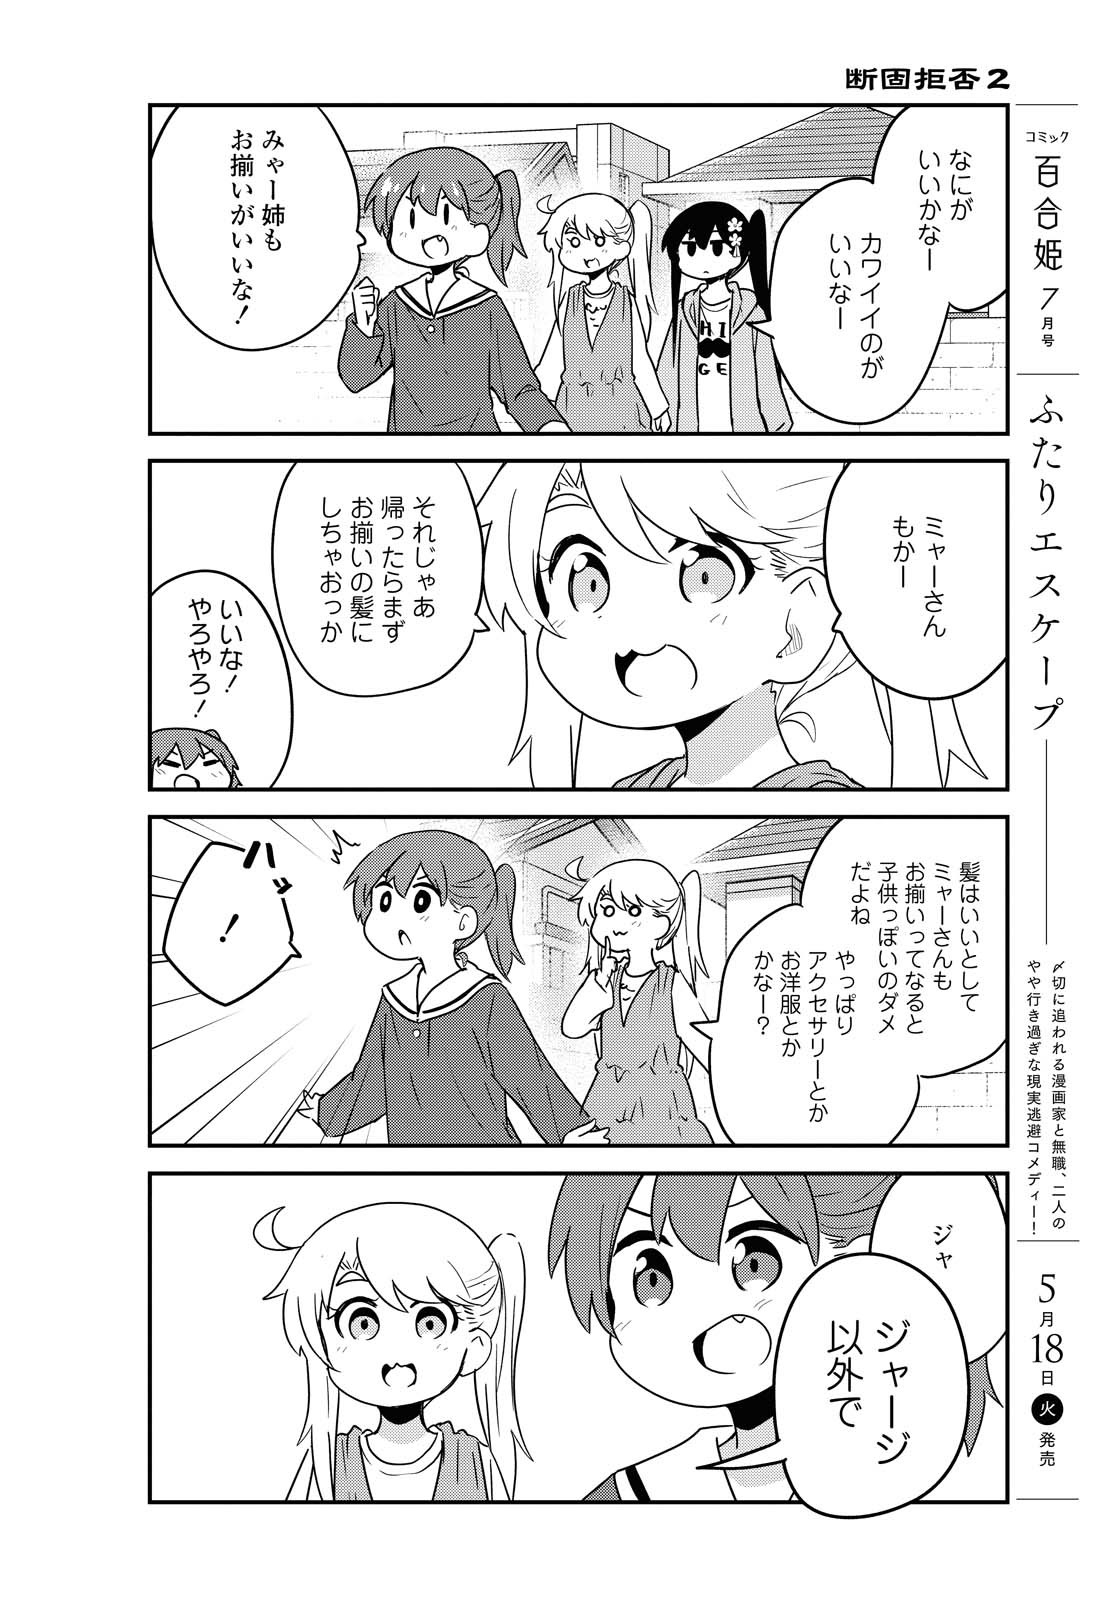 Watashi ni Tenshi ga Maiorita! - Chapter 81 - Page 8